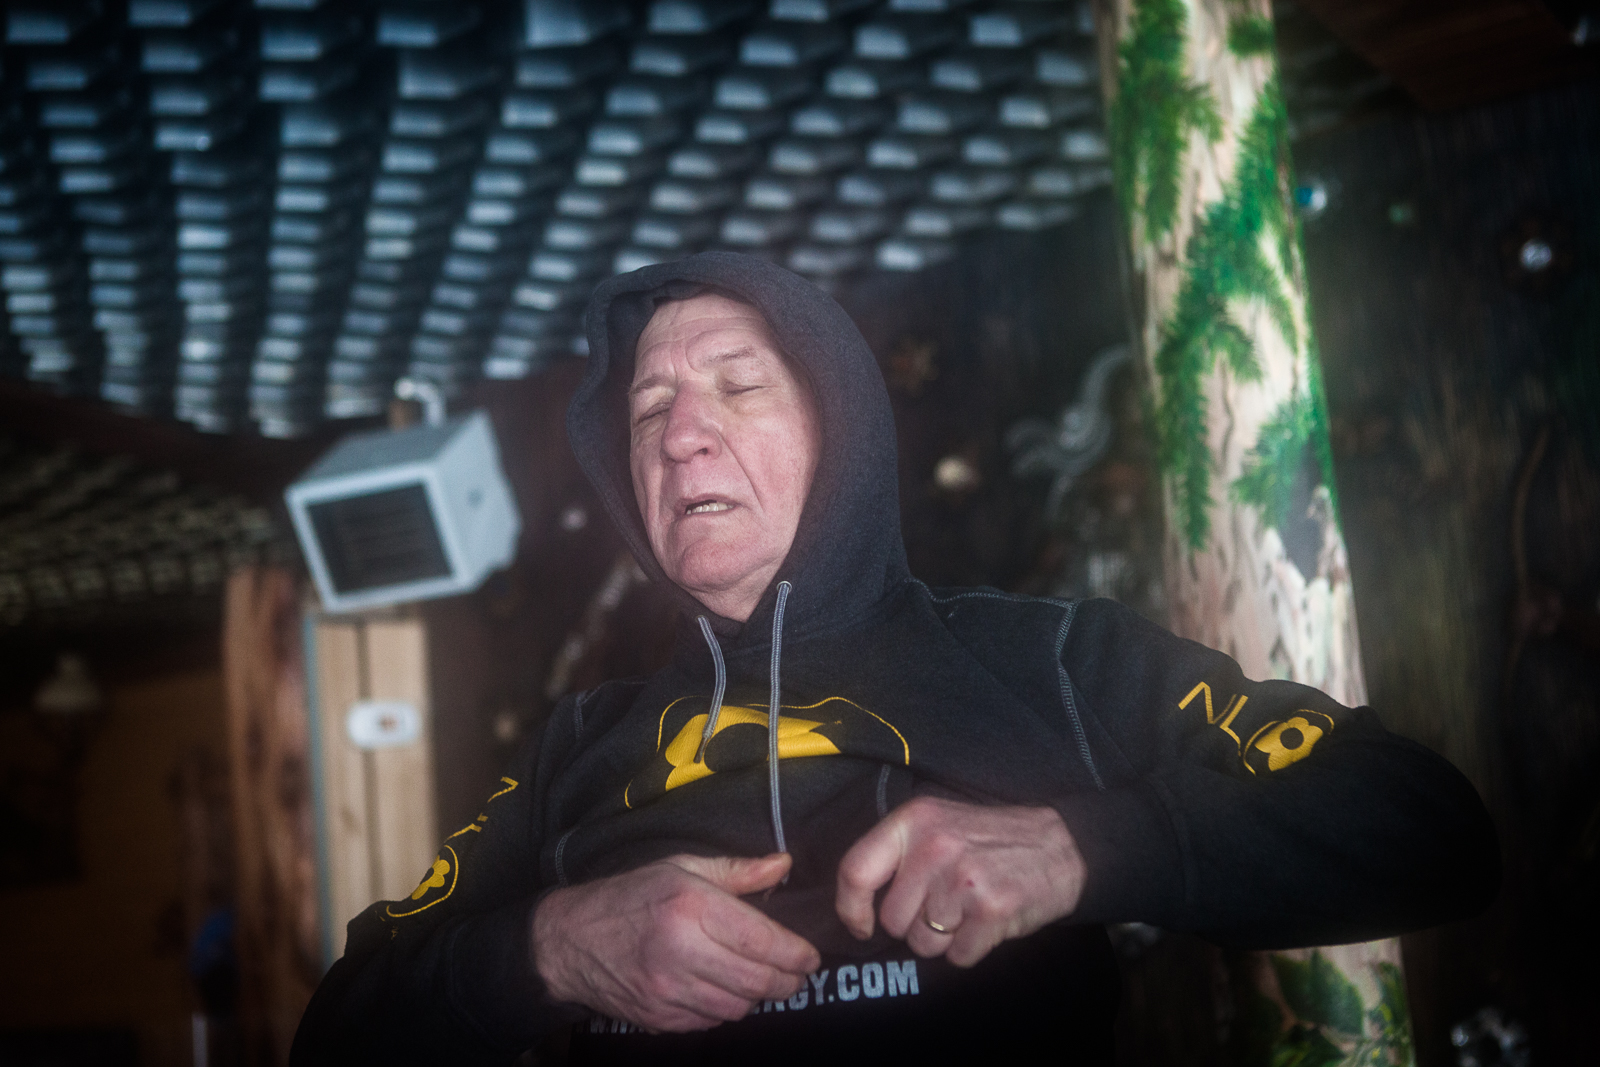 Karpacz, Pologne, 13/02/2014. Wubbo Ockels, 67 ans, ancien astronaute, se bat contre un cancer des reins et cherche un moyen de guérir lors de ce stage de résistance au froid. Il vient de terminer l'ascension de la  montagne Sniejka par des températures proches de -10°C.

Karpacz, Poland, 02.13.2014. Ockels, 67, former astronaut, fights against kidney cancer he's seeking to cure at this resistance to cold workshop. He just finished climbing the Sniejka montain, with temperatures close to -10°C.